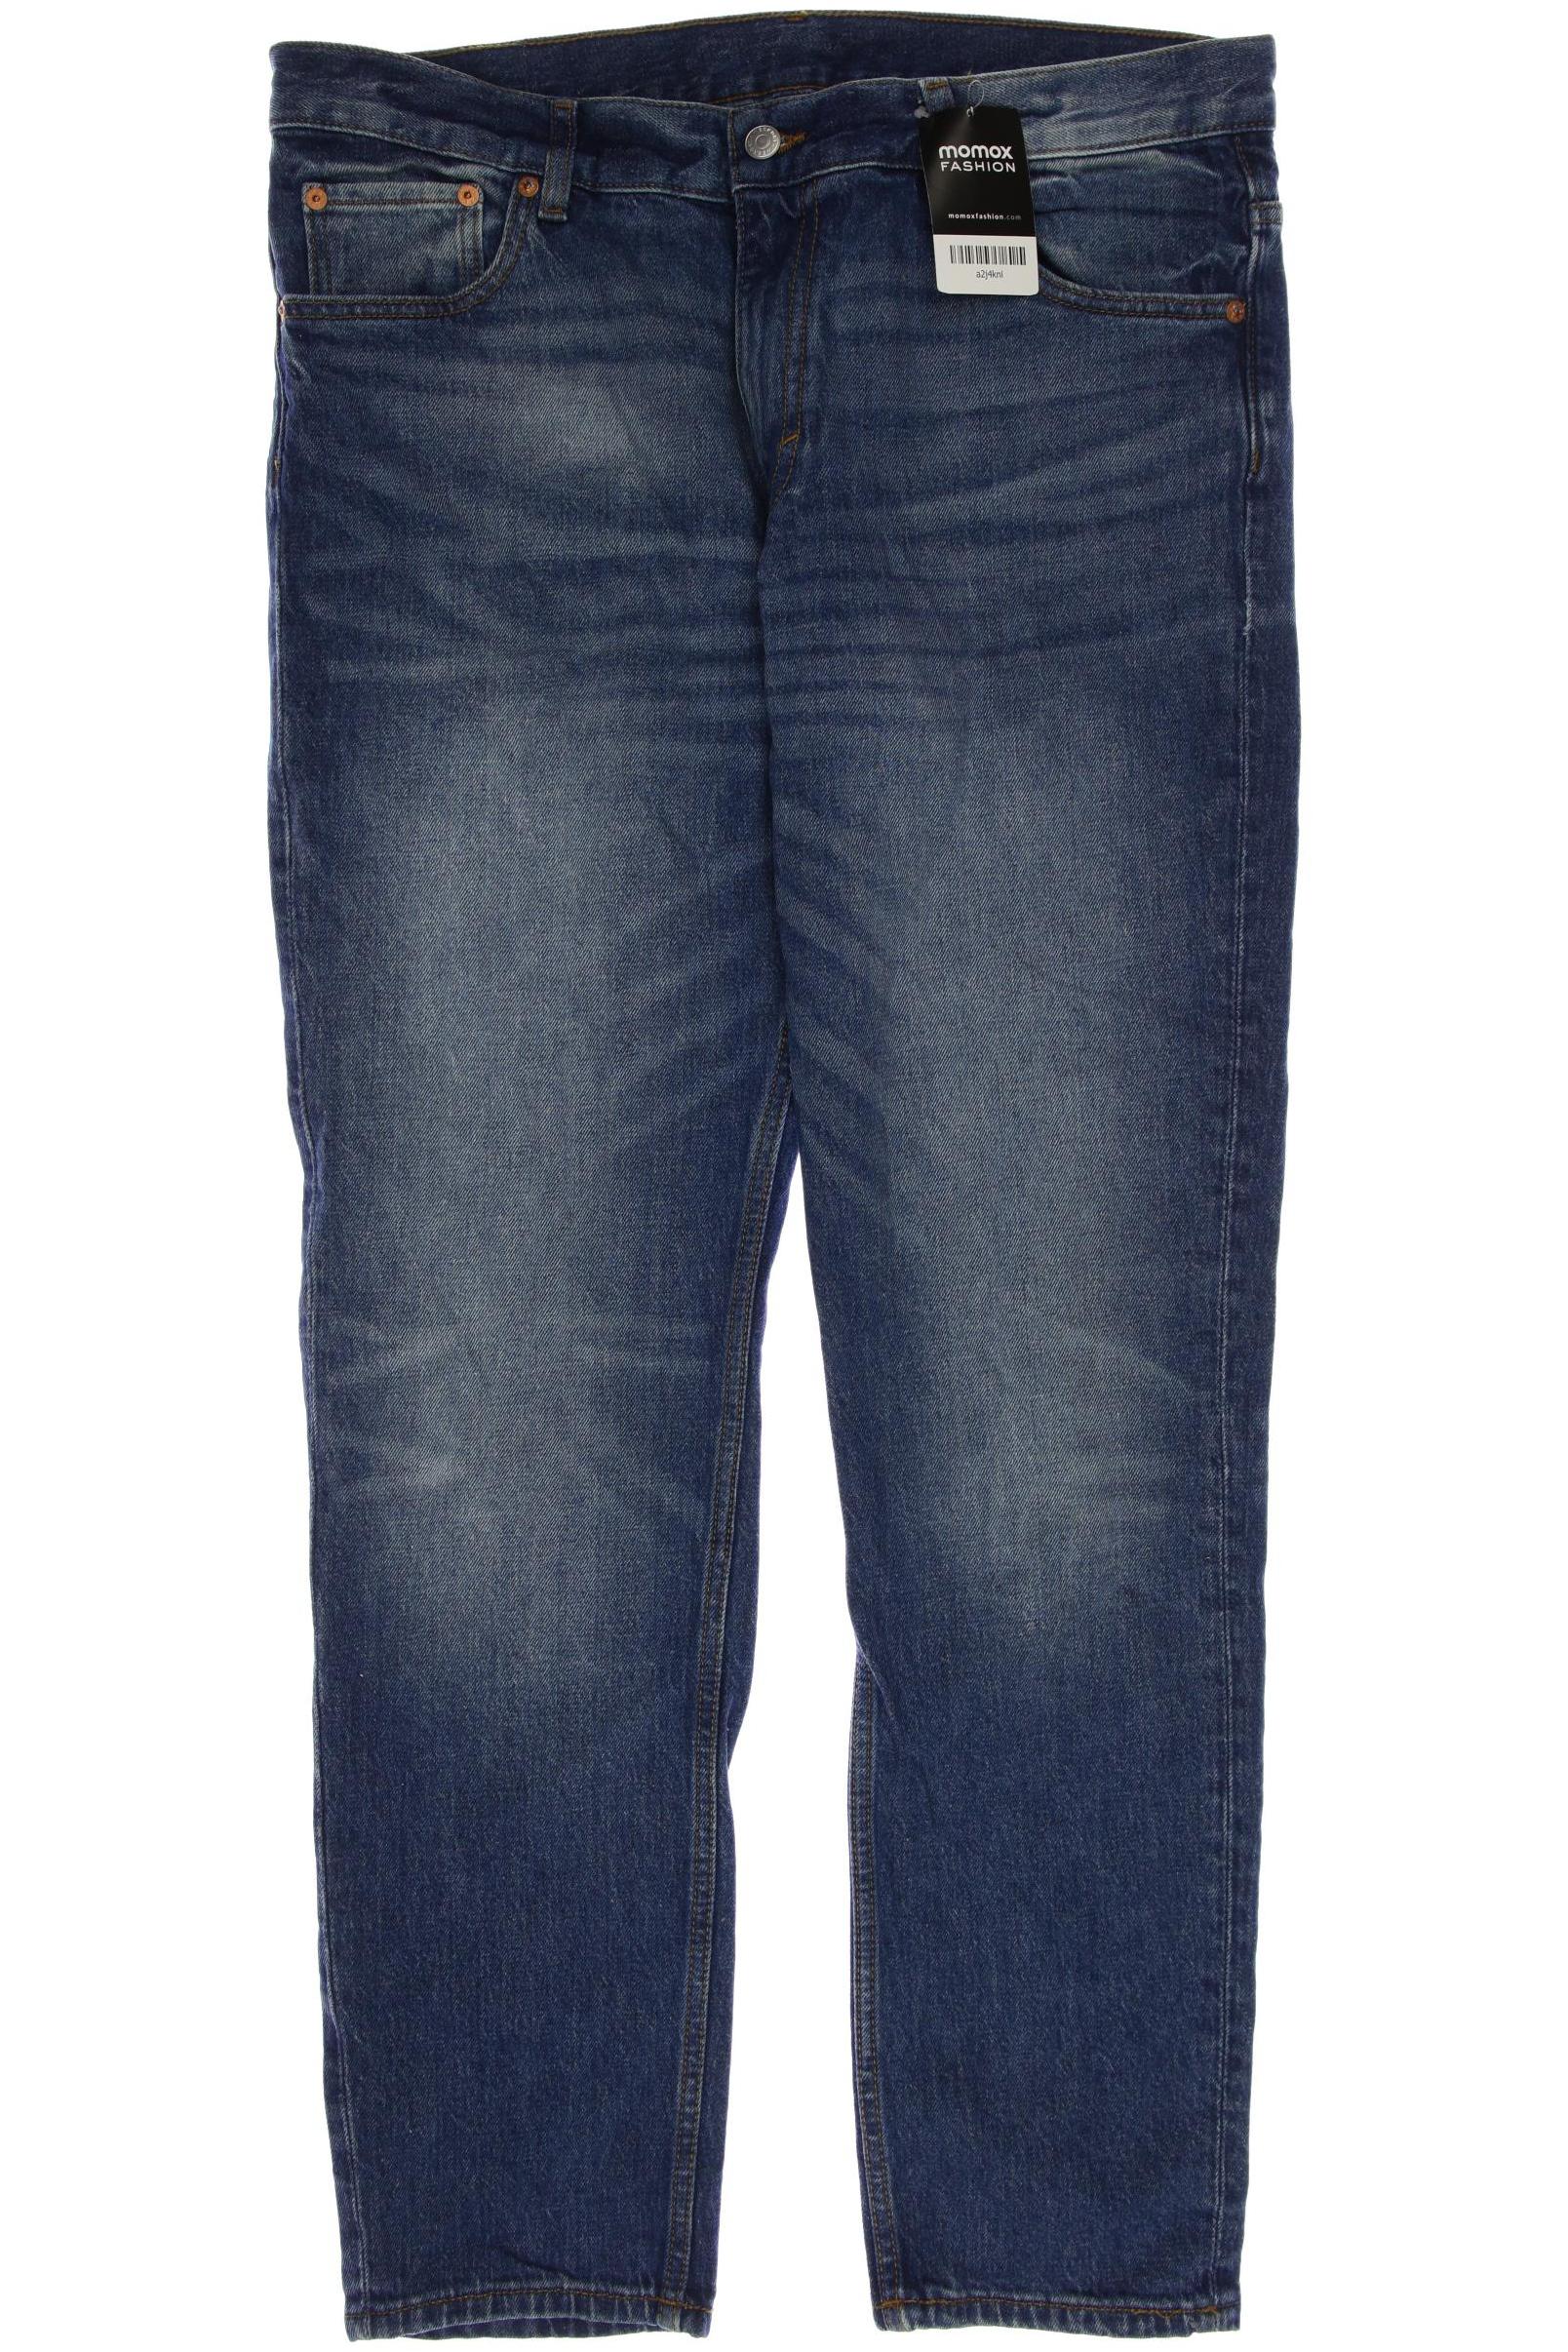 Weekday Herren Jeans, blau, Gr. 52 von Weekday